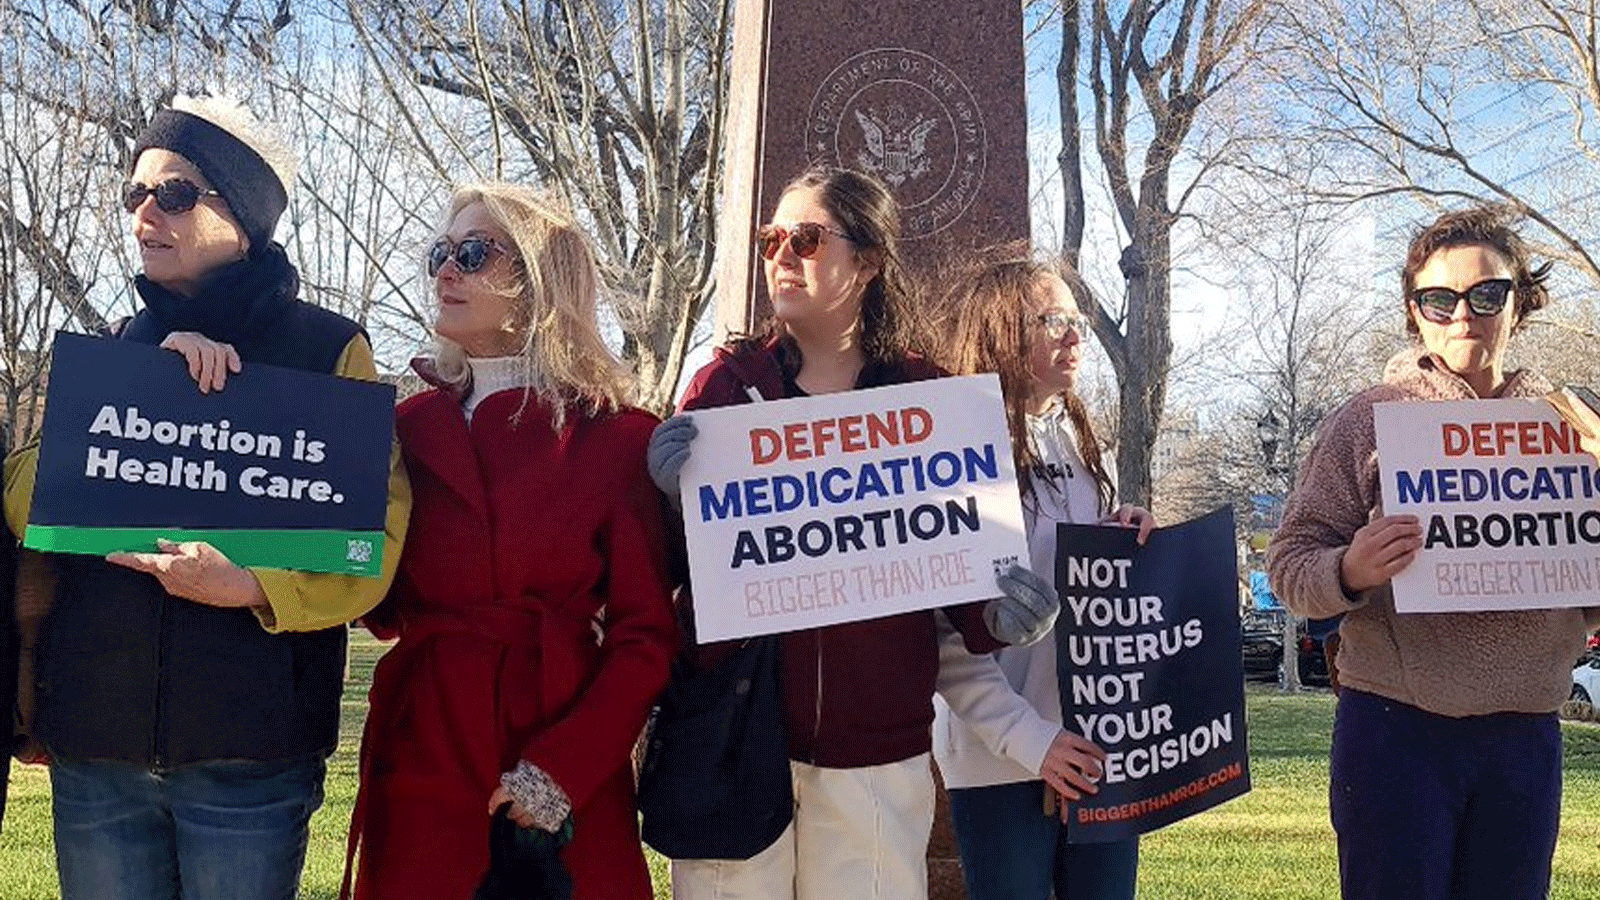 نساء ترفعن لافتات ضد قرار حظر حبوب الإجهاض في ولاية وايومينغ الأميركية